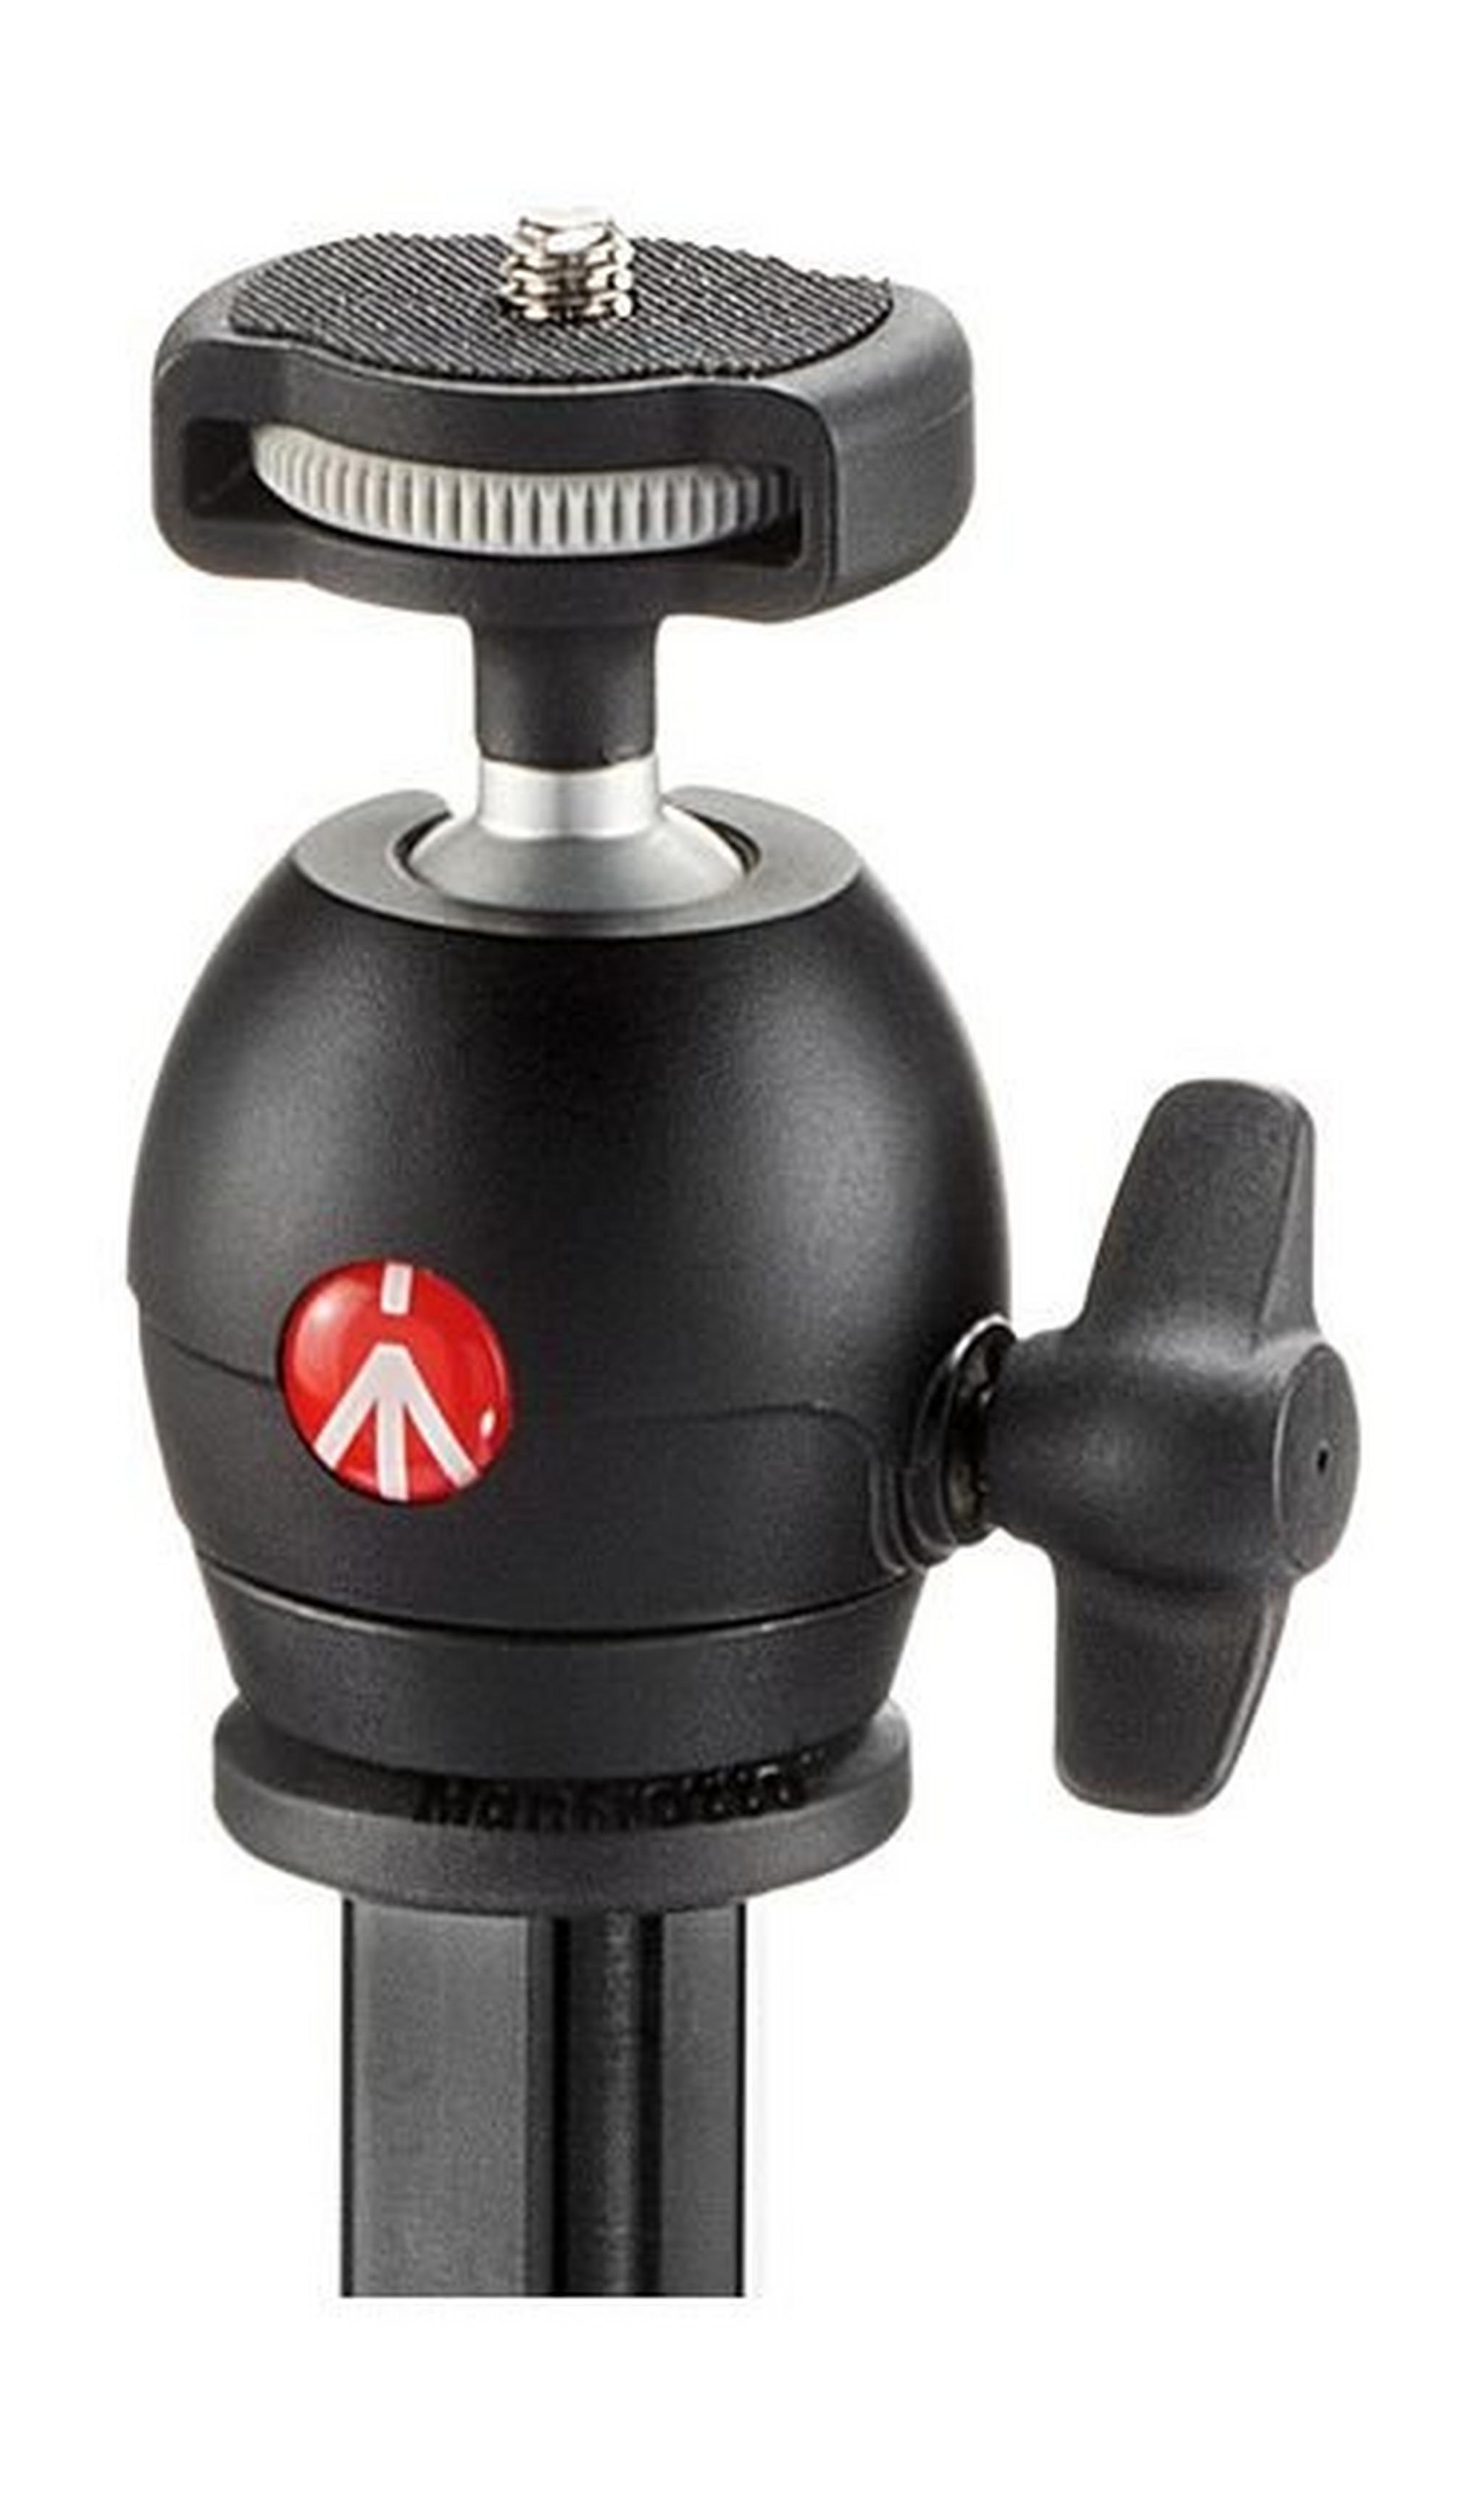 حامل كاميرا ثلاثي مع رأس كروي مدمج وخفيف الوزن من مانفروتو – ارتفاع ١٣١ سم – أسود (MKCOMPACTLT-BK)